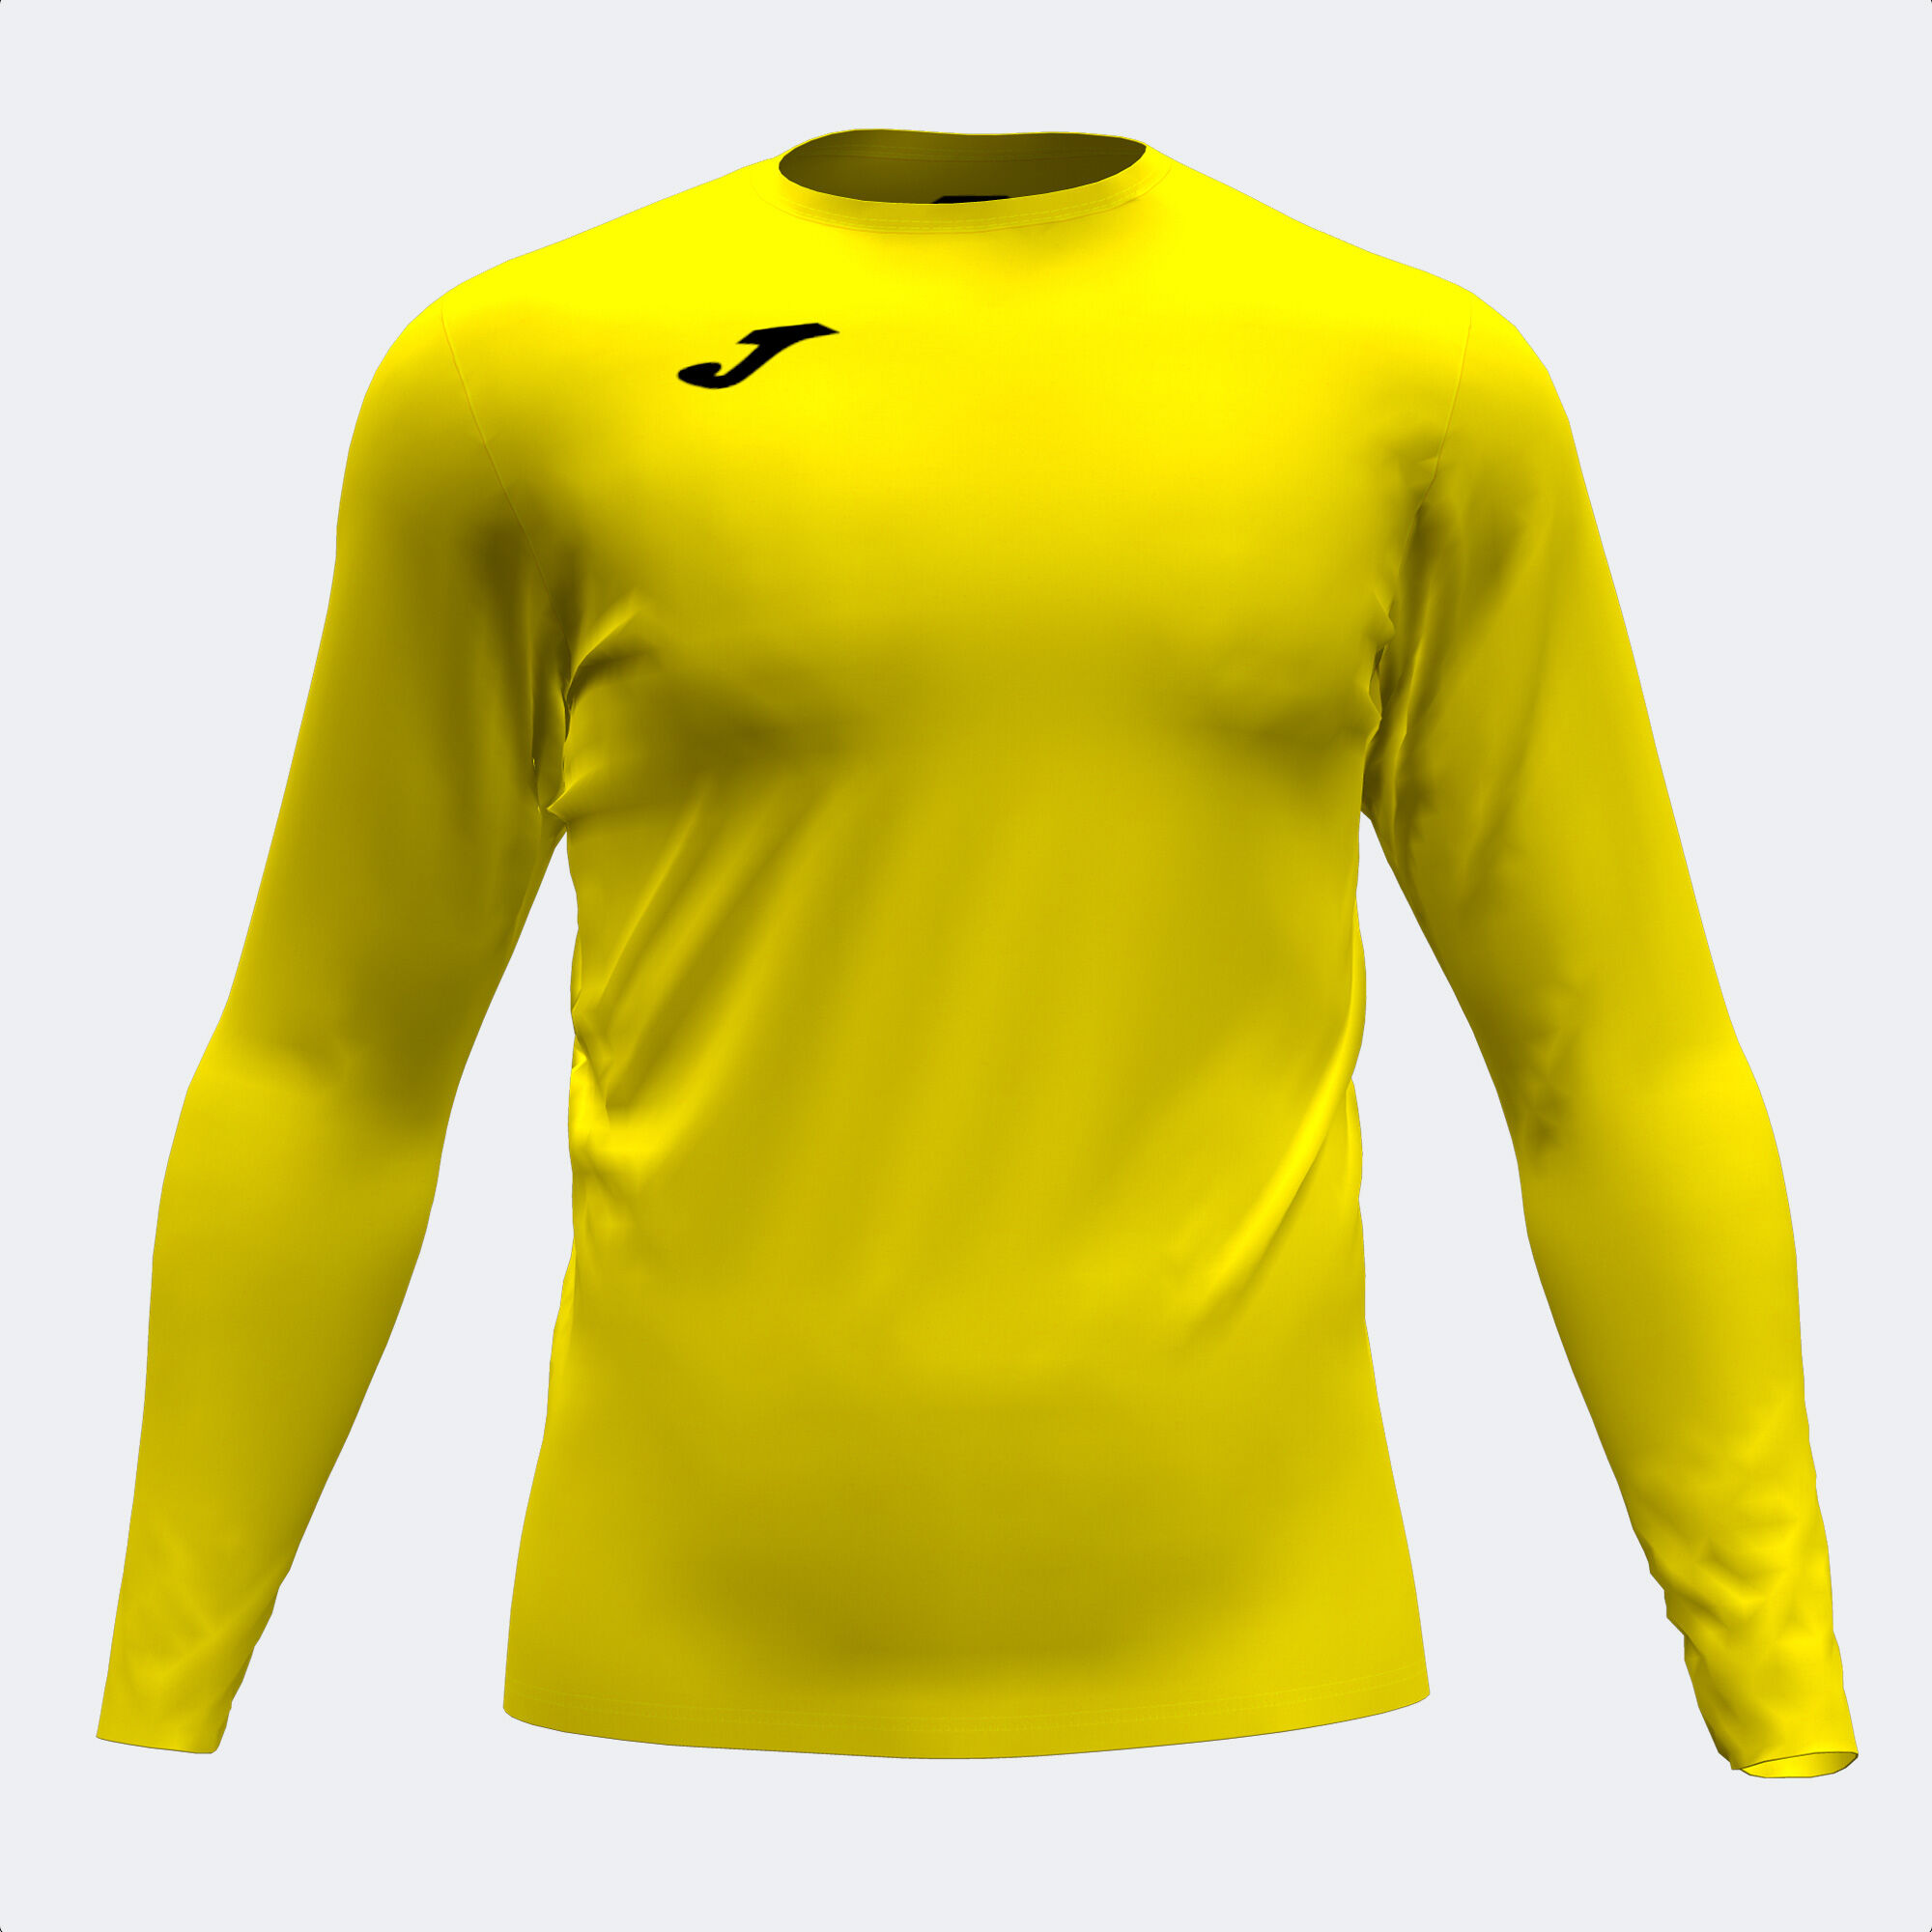 Camiseta manga larga unisex Brama Academy amarillo